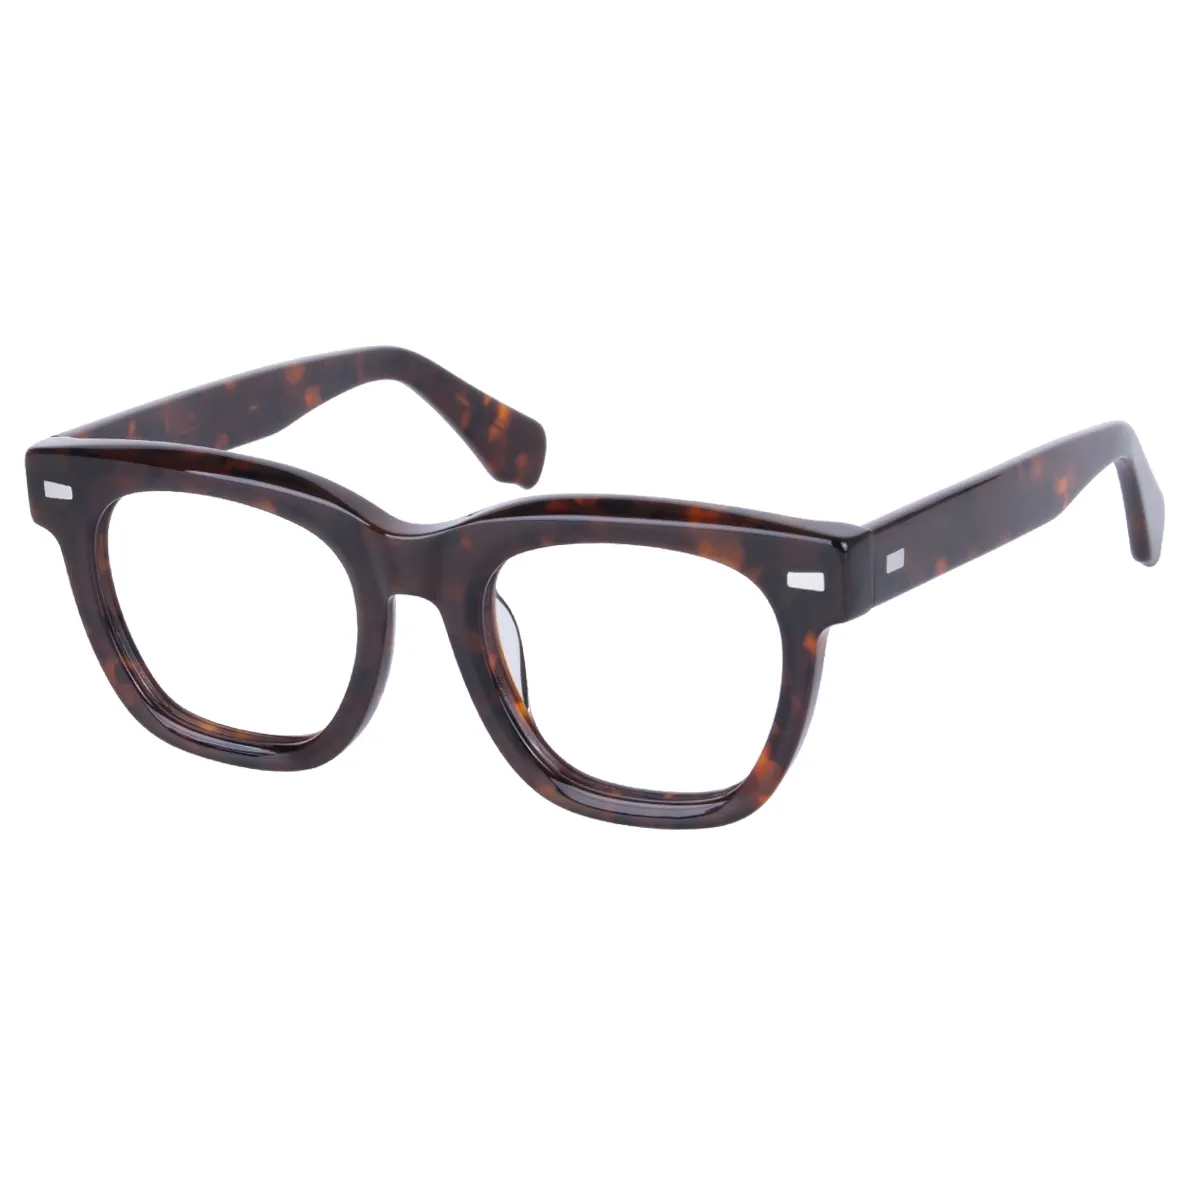 Morty - Square Tortoiseshell Glasses for Women - EFE